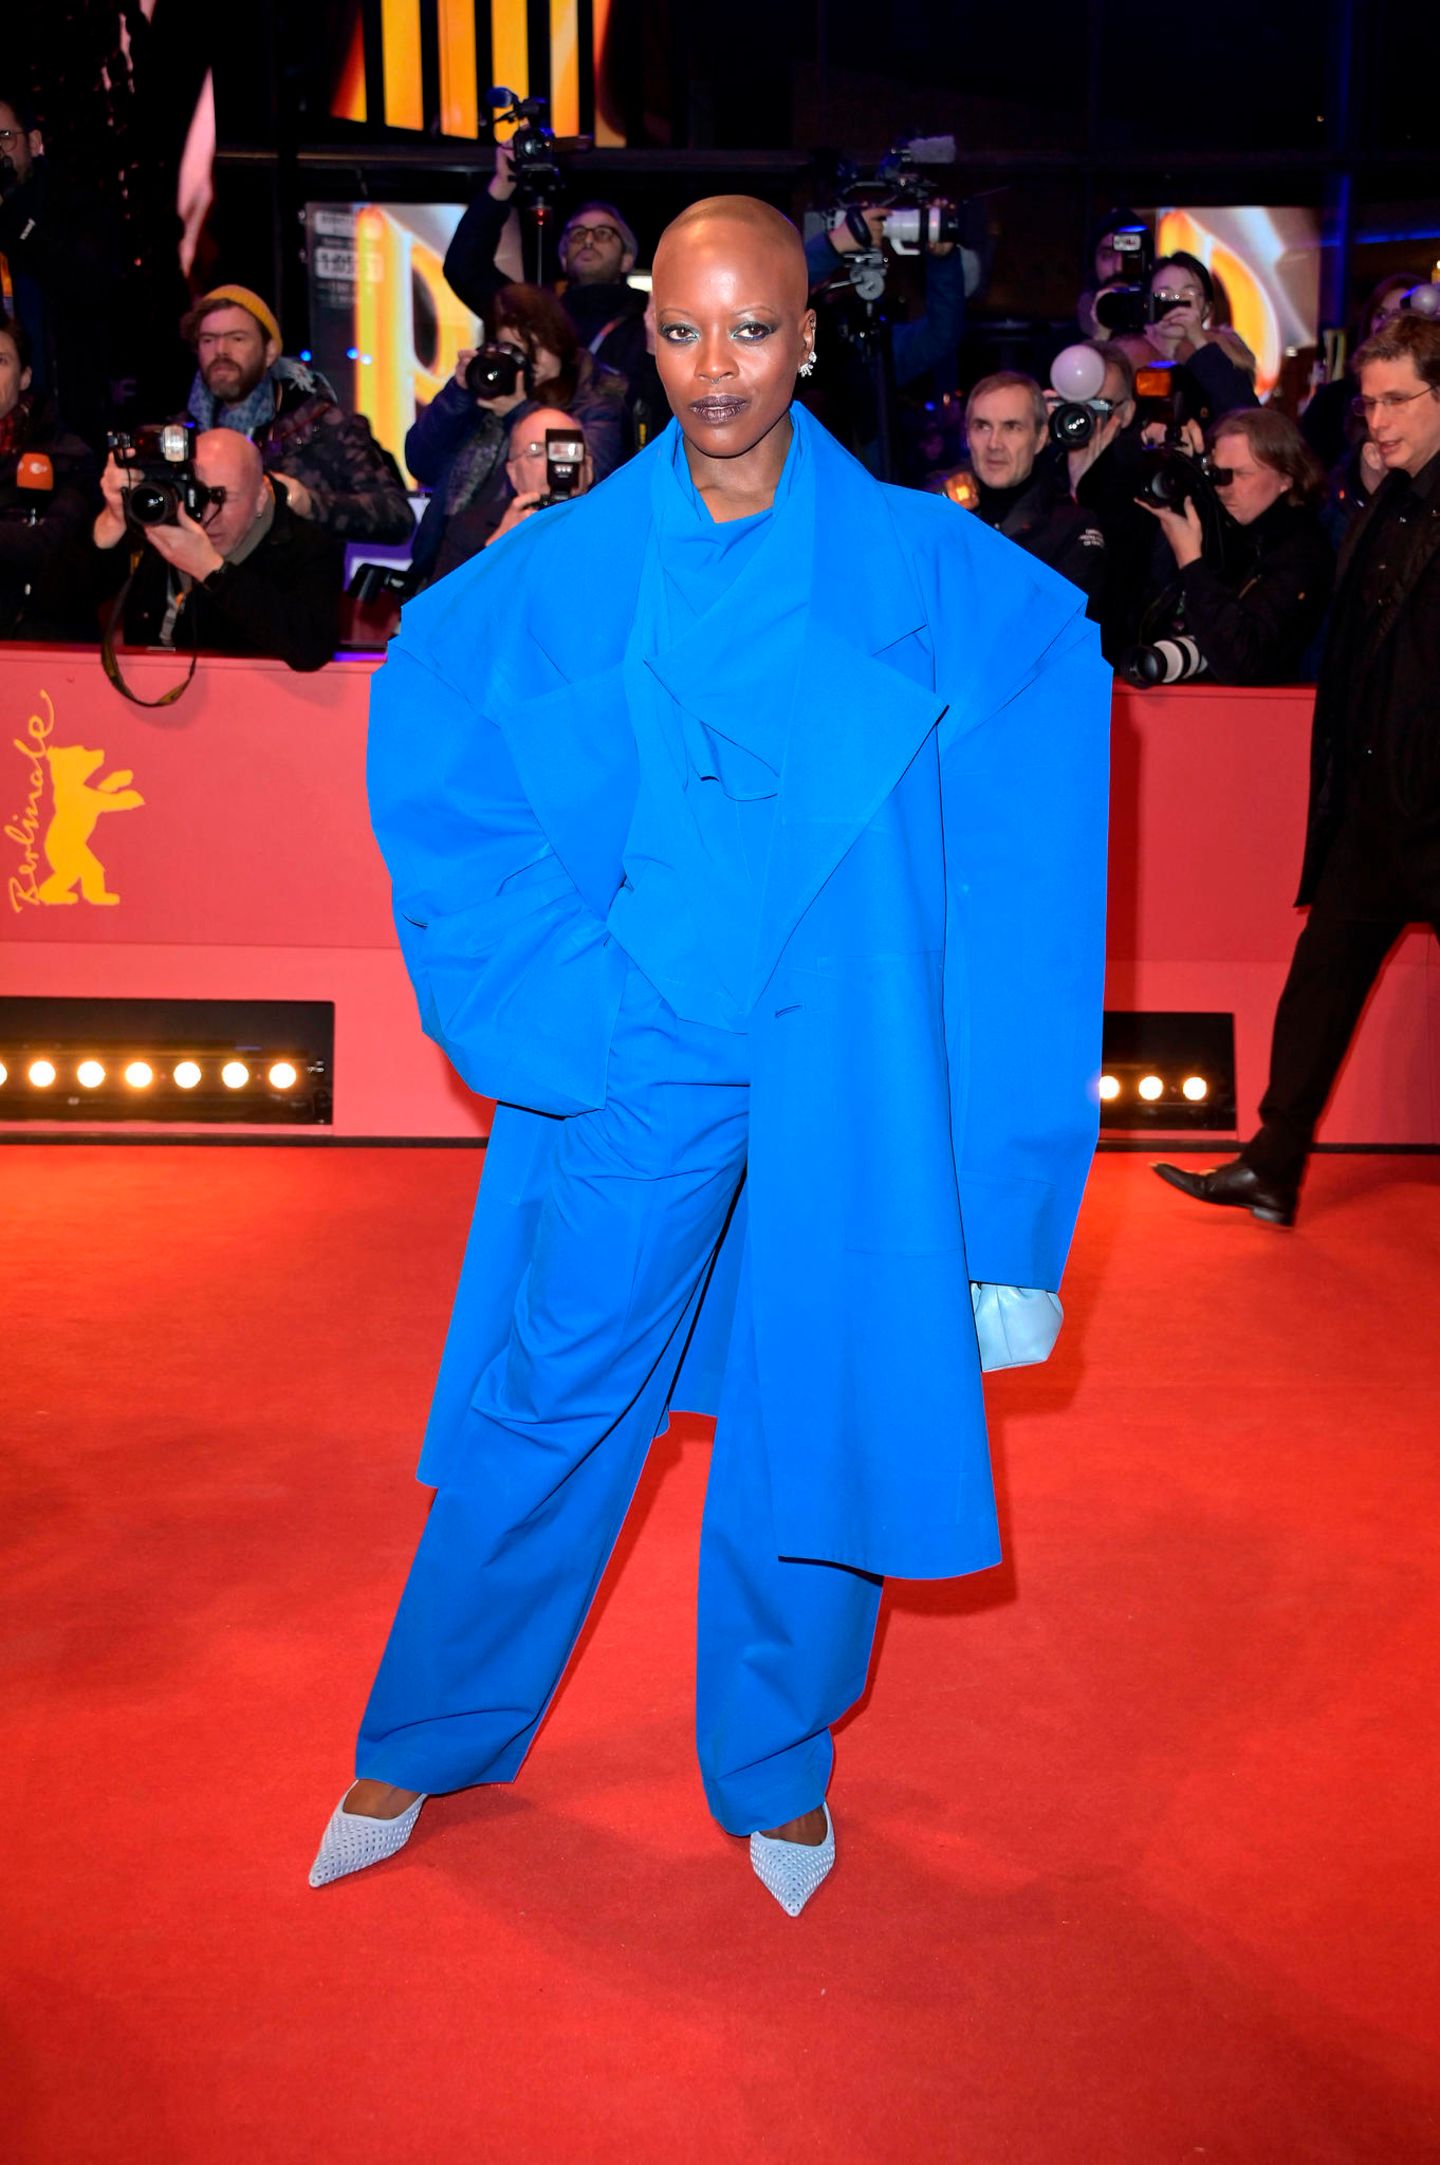 Mit XL-Silhouette läuft Schauspielerin und Musicaldarstellerin Florence Kasumba über den Red Carpet. Dass die Schultern wieder breiter werden, konnten wir schon auf den Laufstegen beobachten – auch diese Umsetzung des Modetrends in strahlendem Blau gefällt uns gut. 